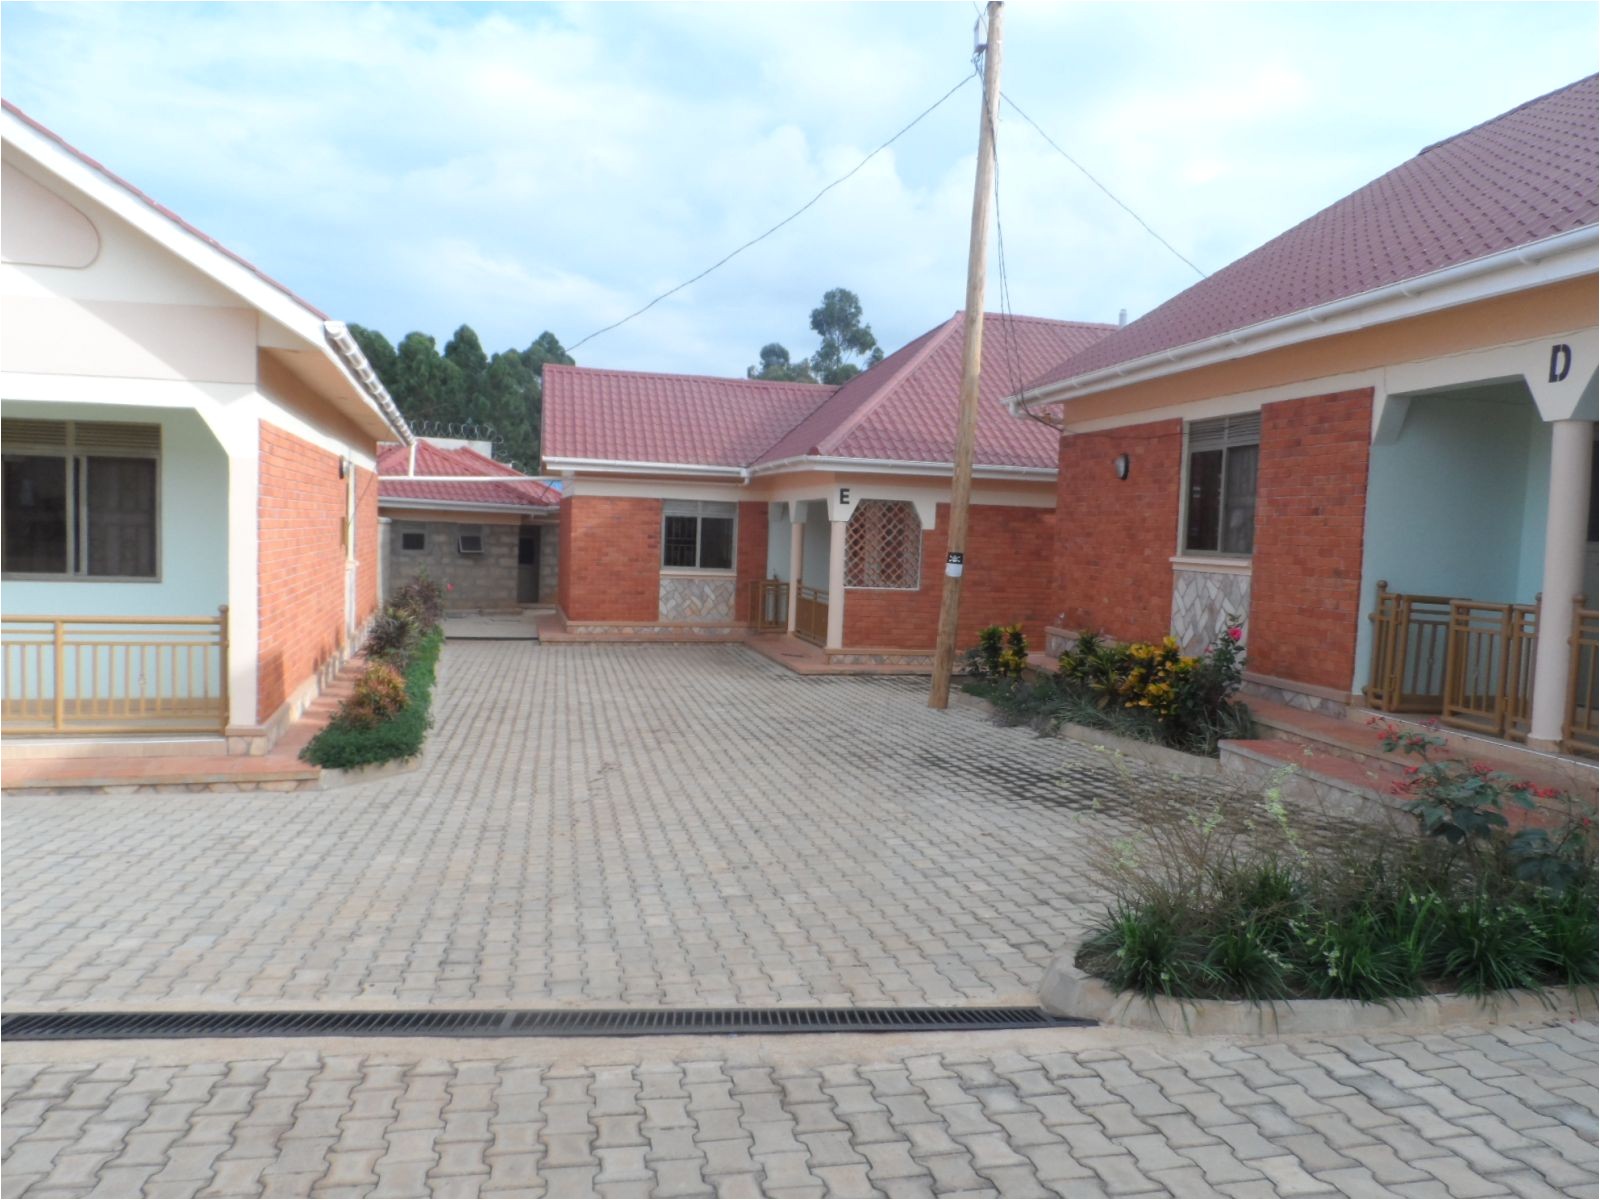 house plans in uganda